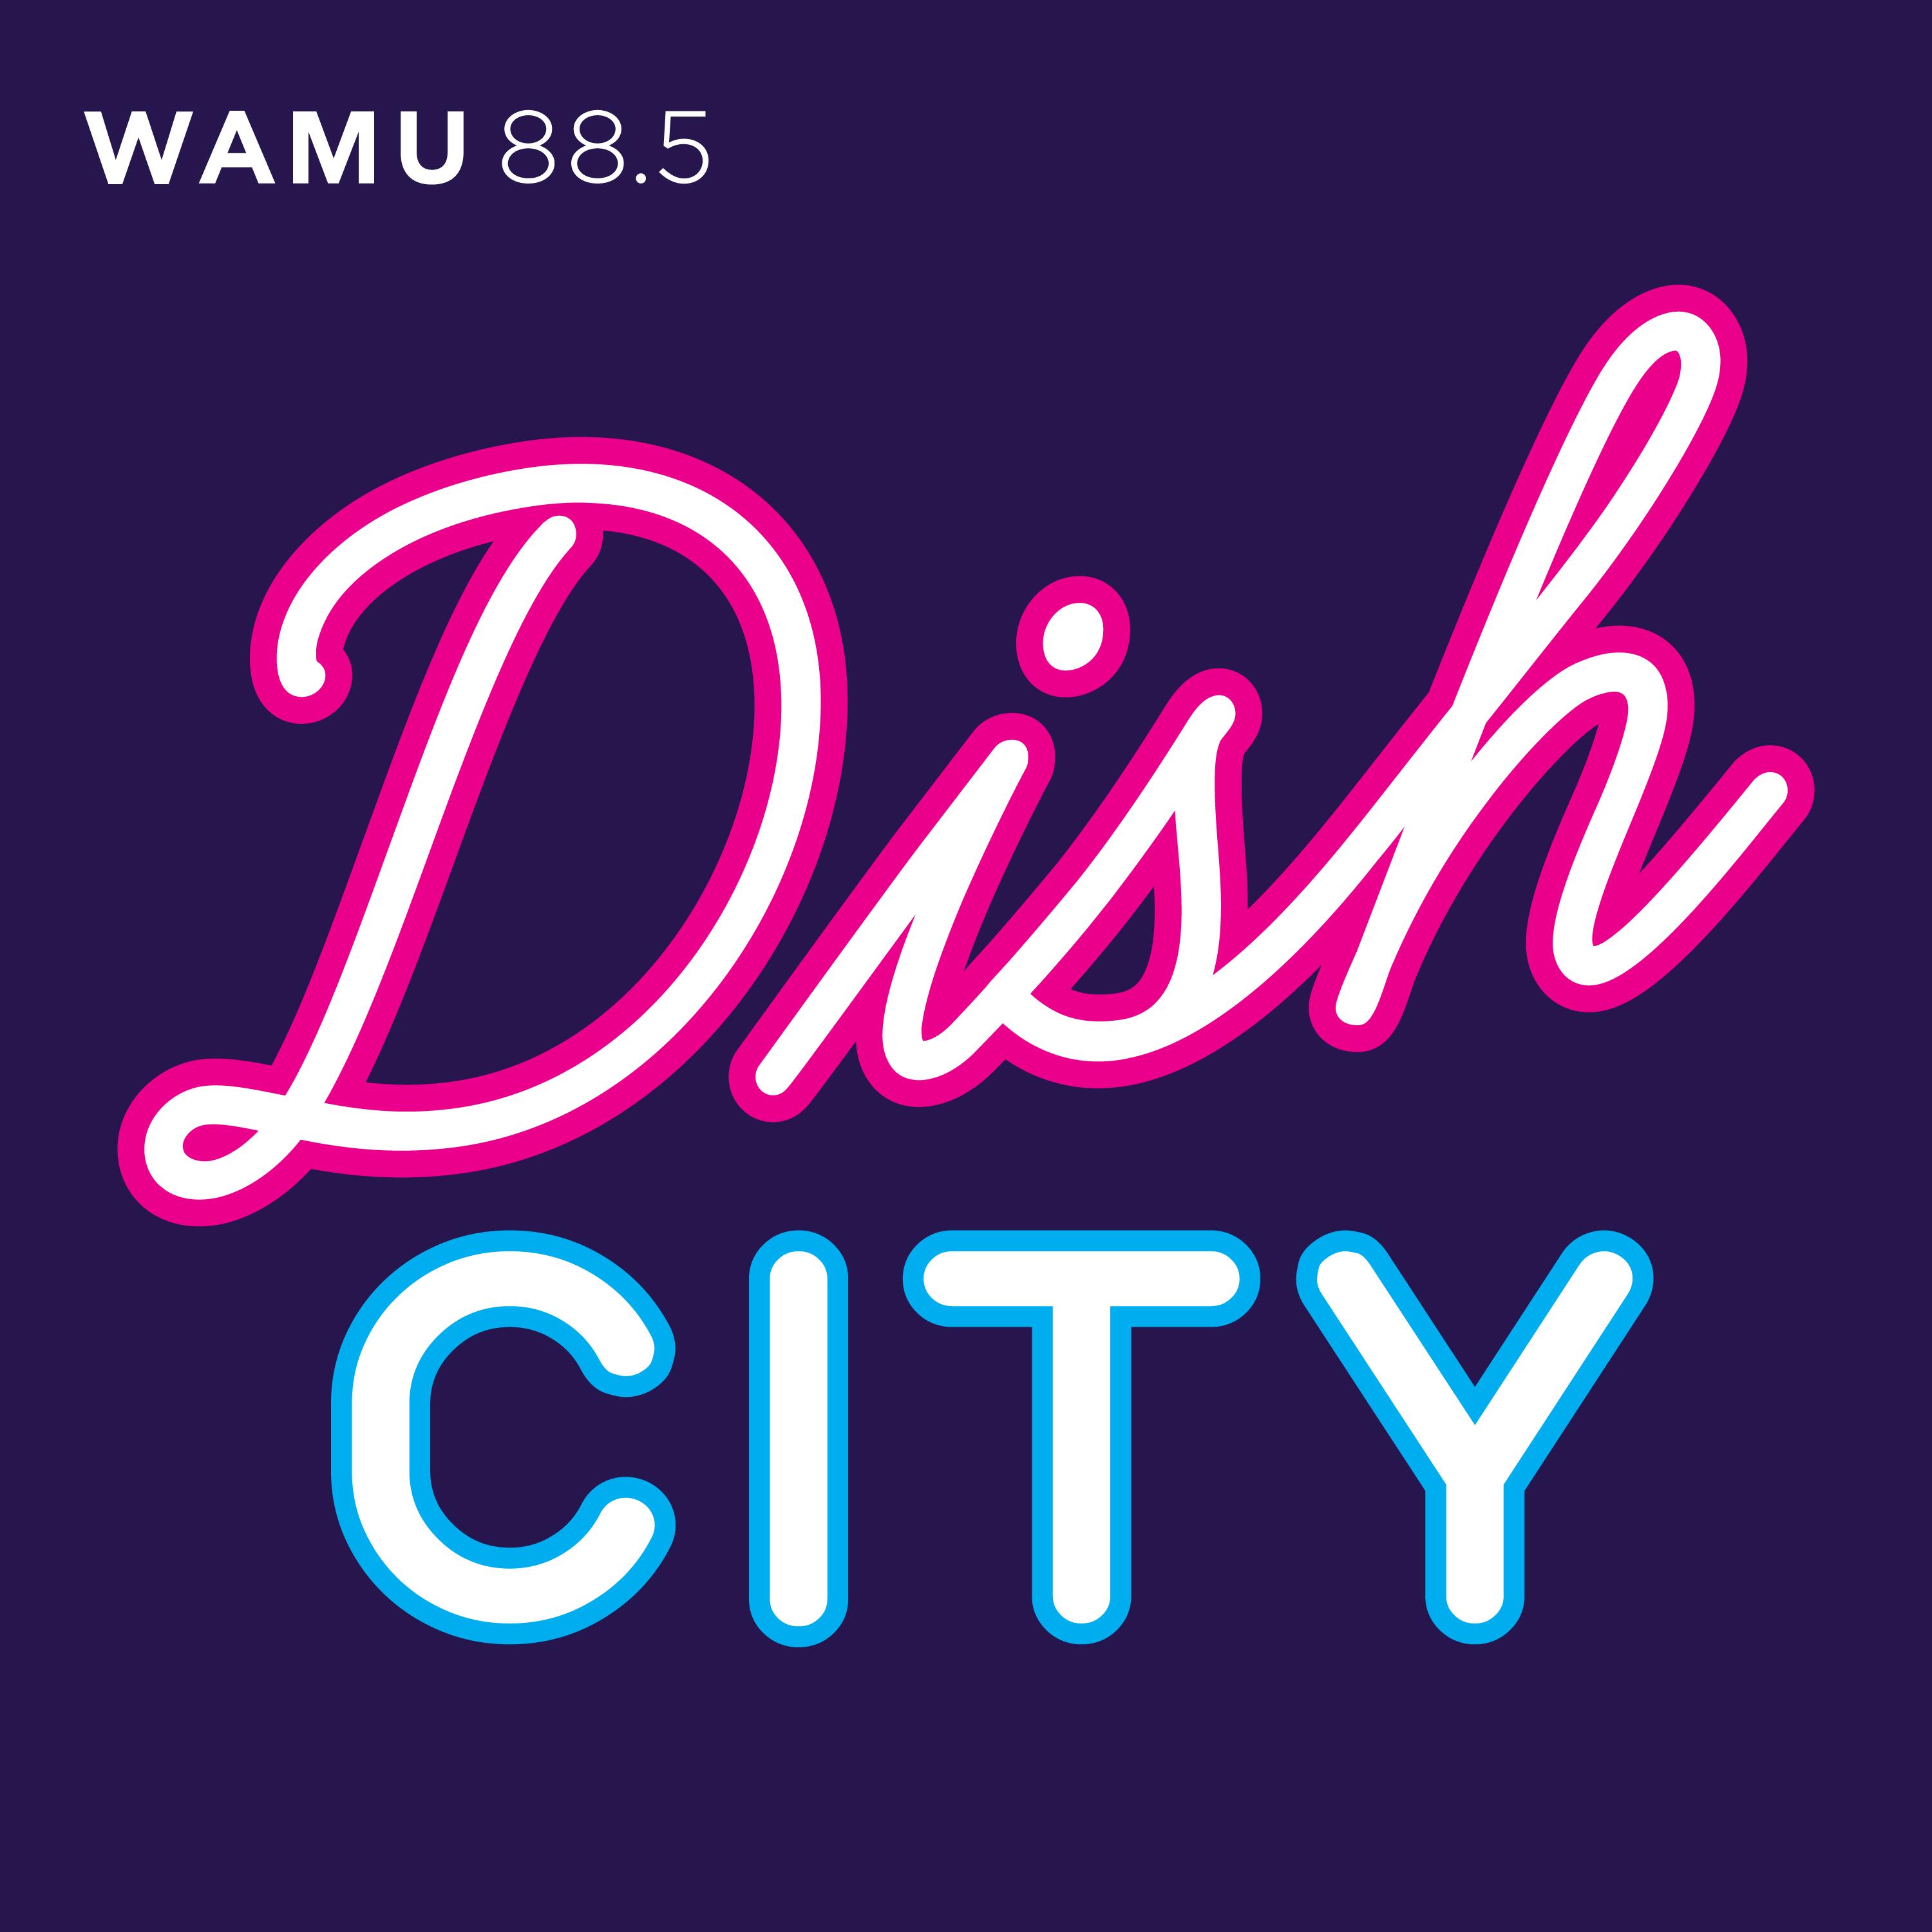 Dish city. WAMU. Dish Listening.